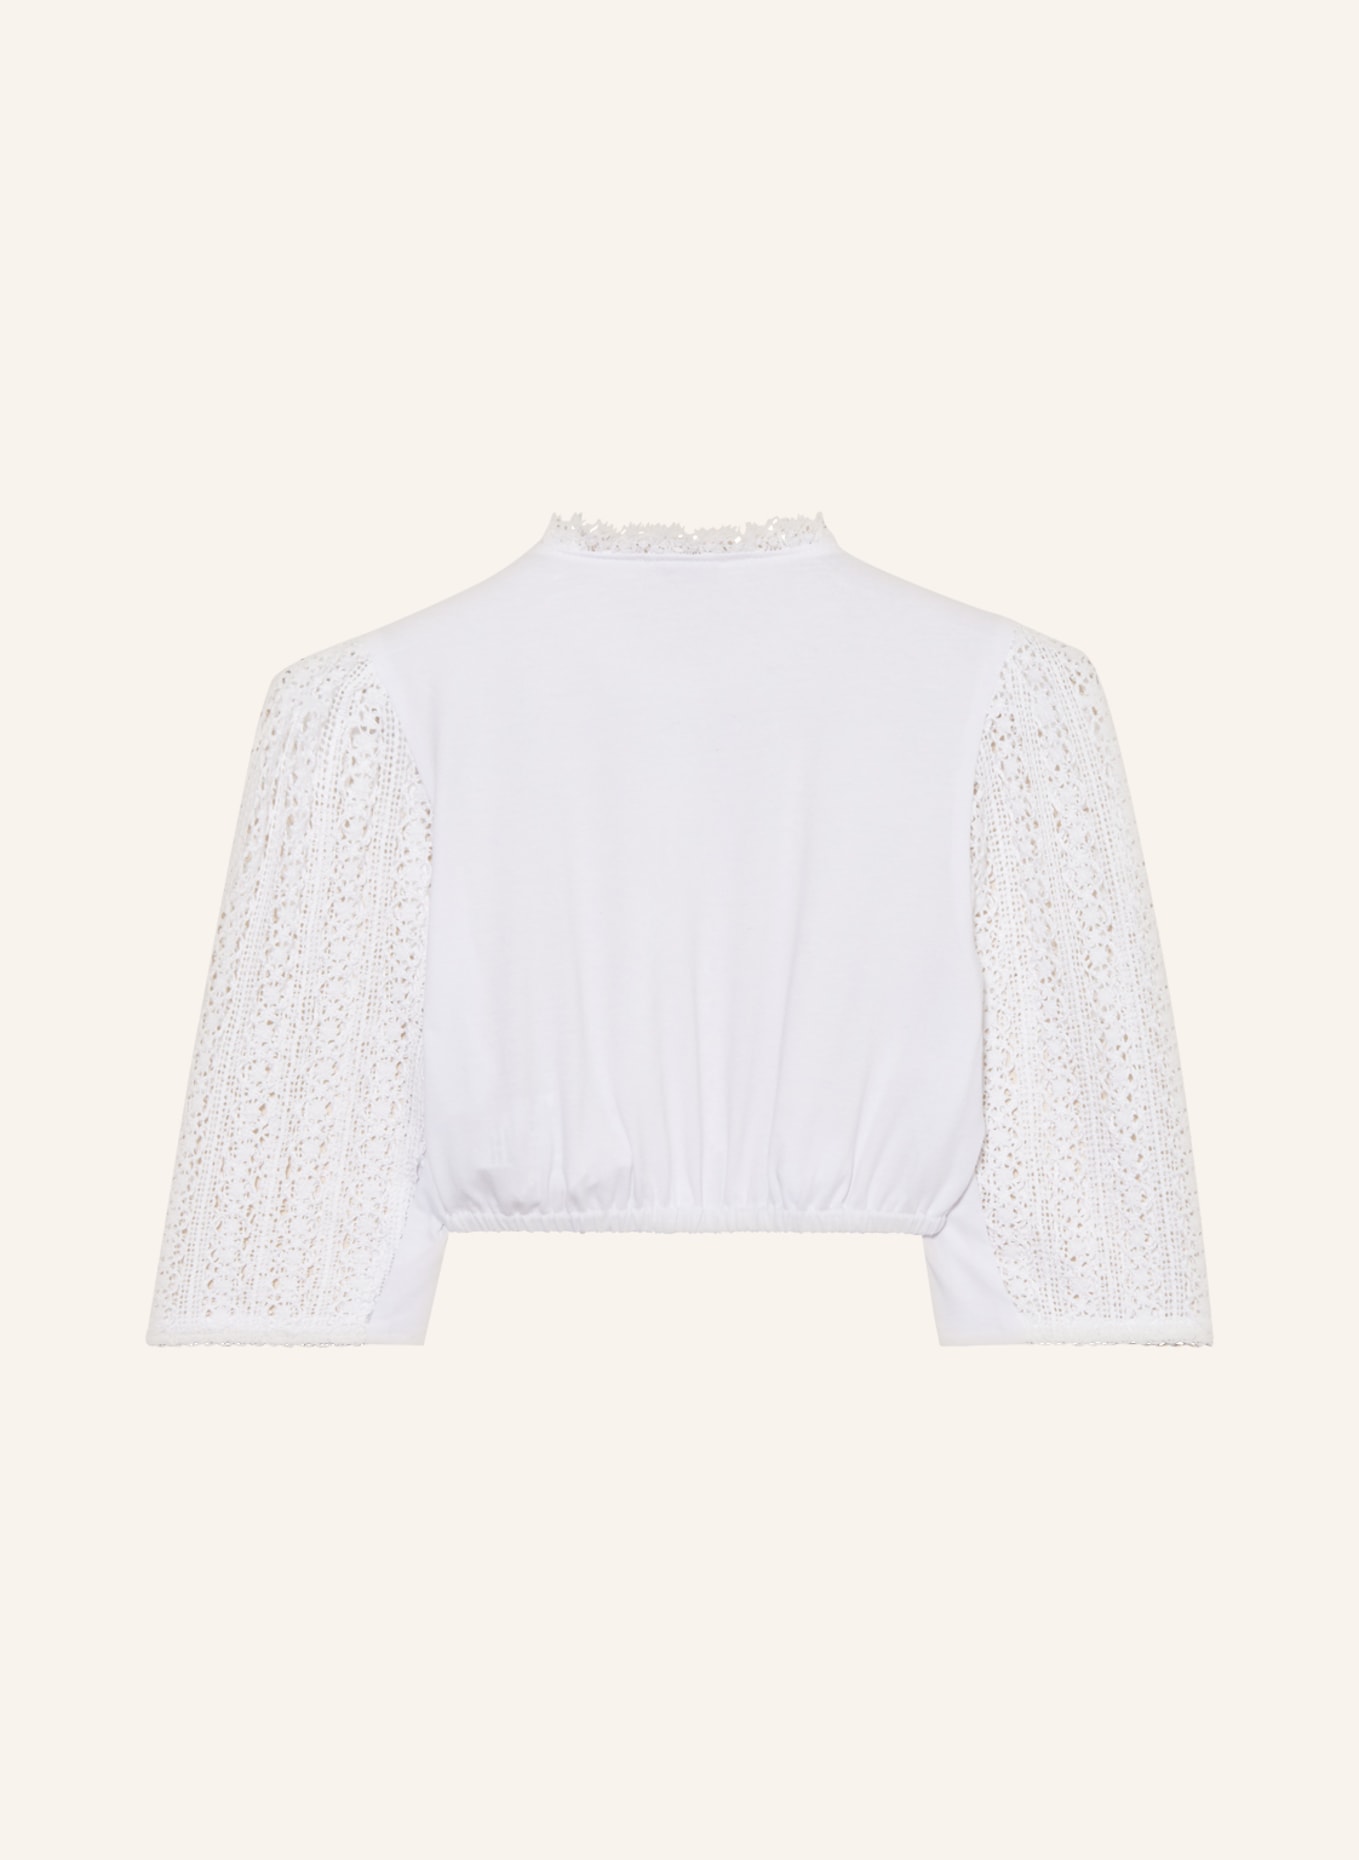 Gottseidank Dirndl blouse ANGÉLIQUE made of lace, Color: WHITE (Image 2)